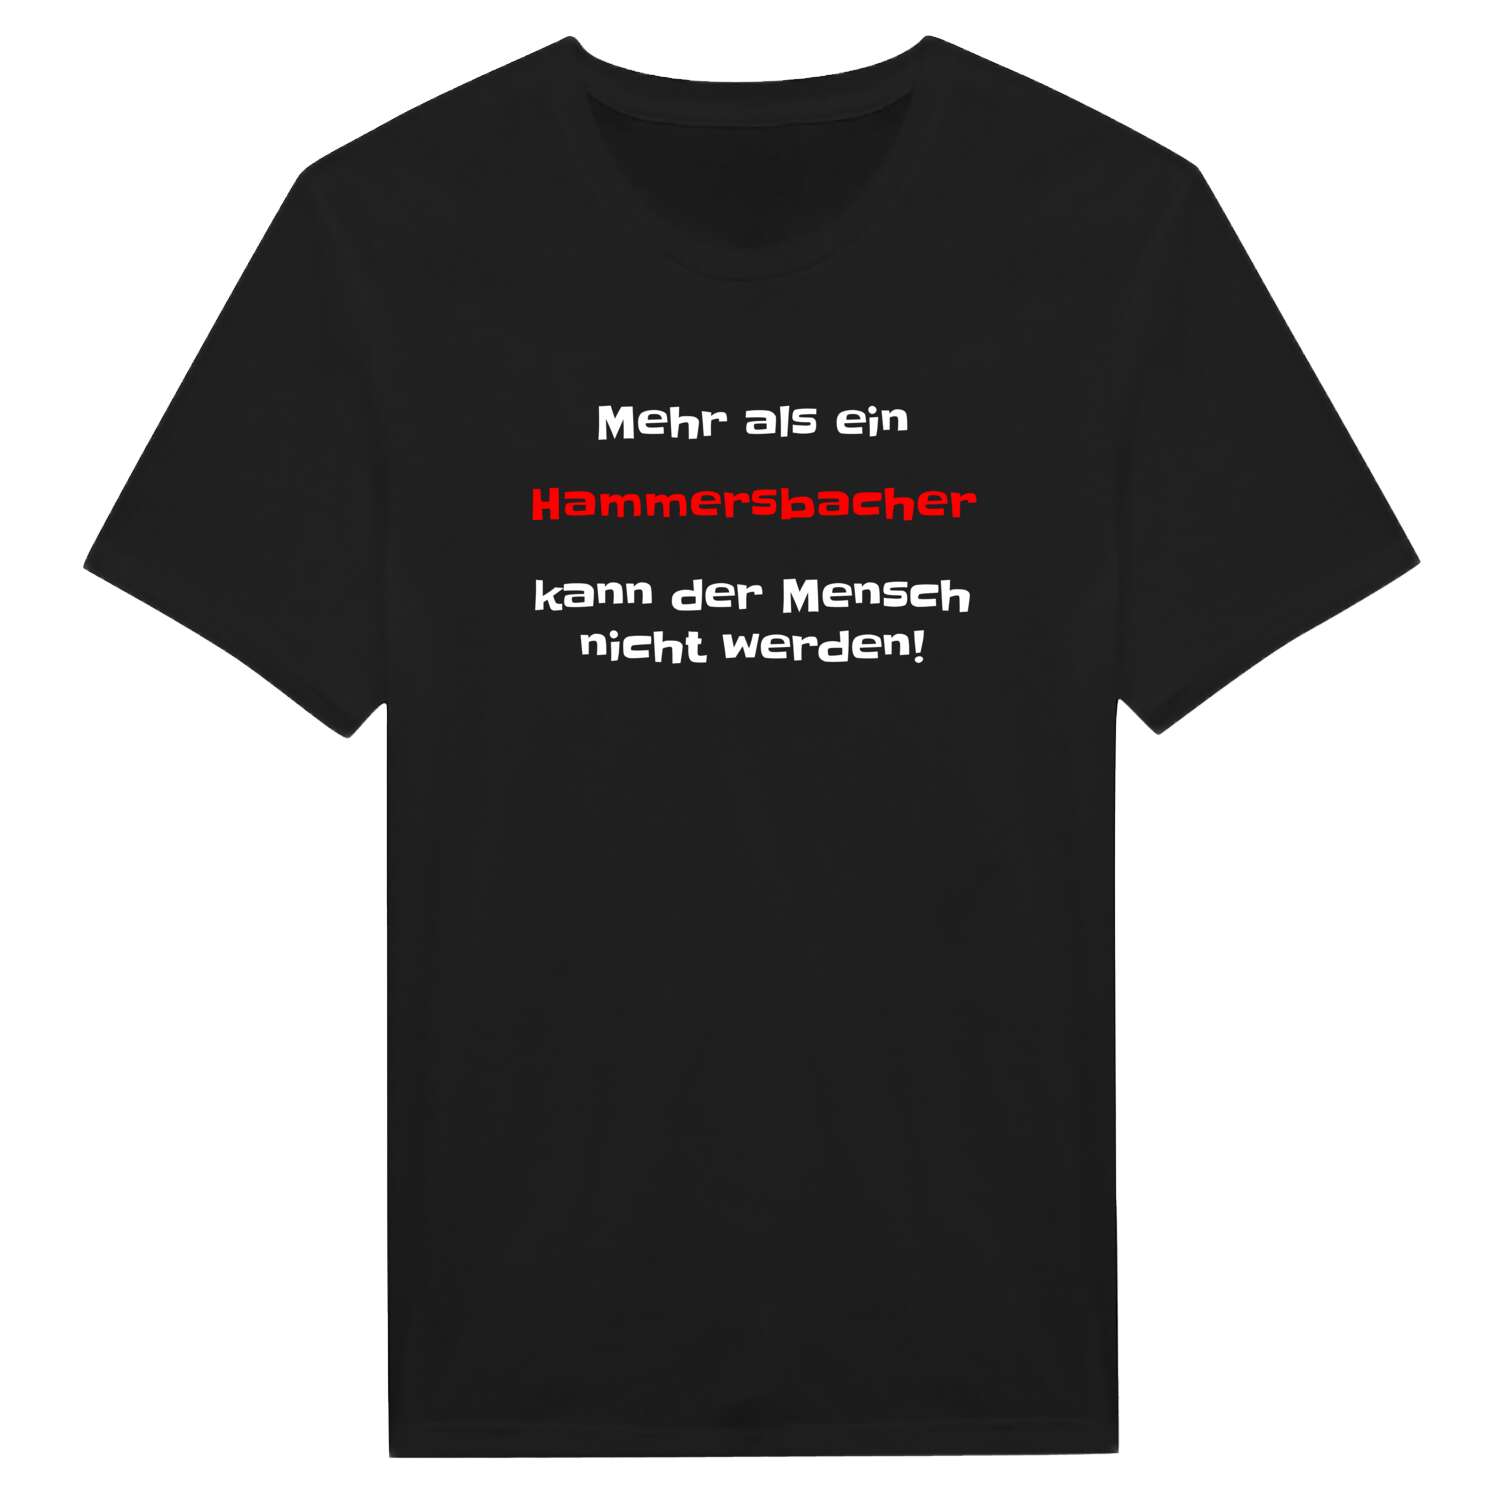 Hammersbach T-Shirt »Mehr als ein«